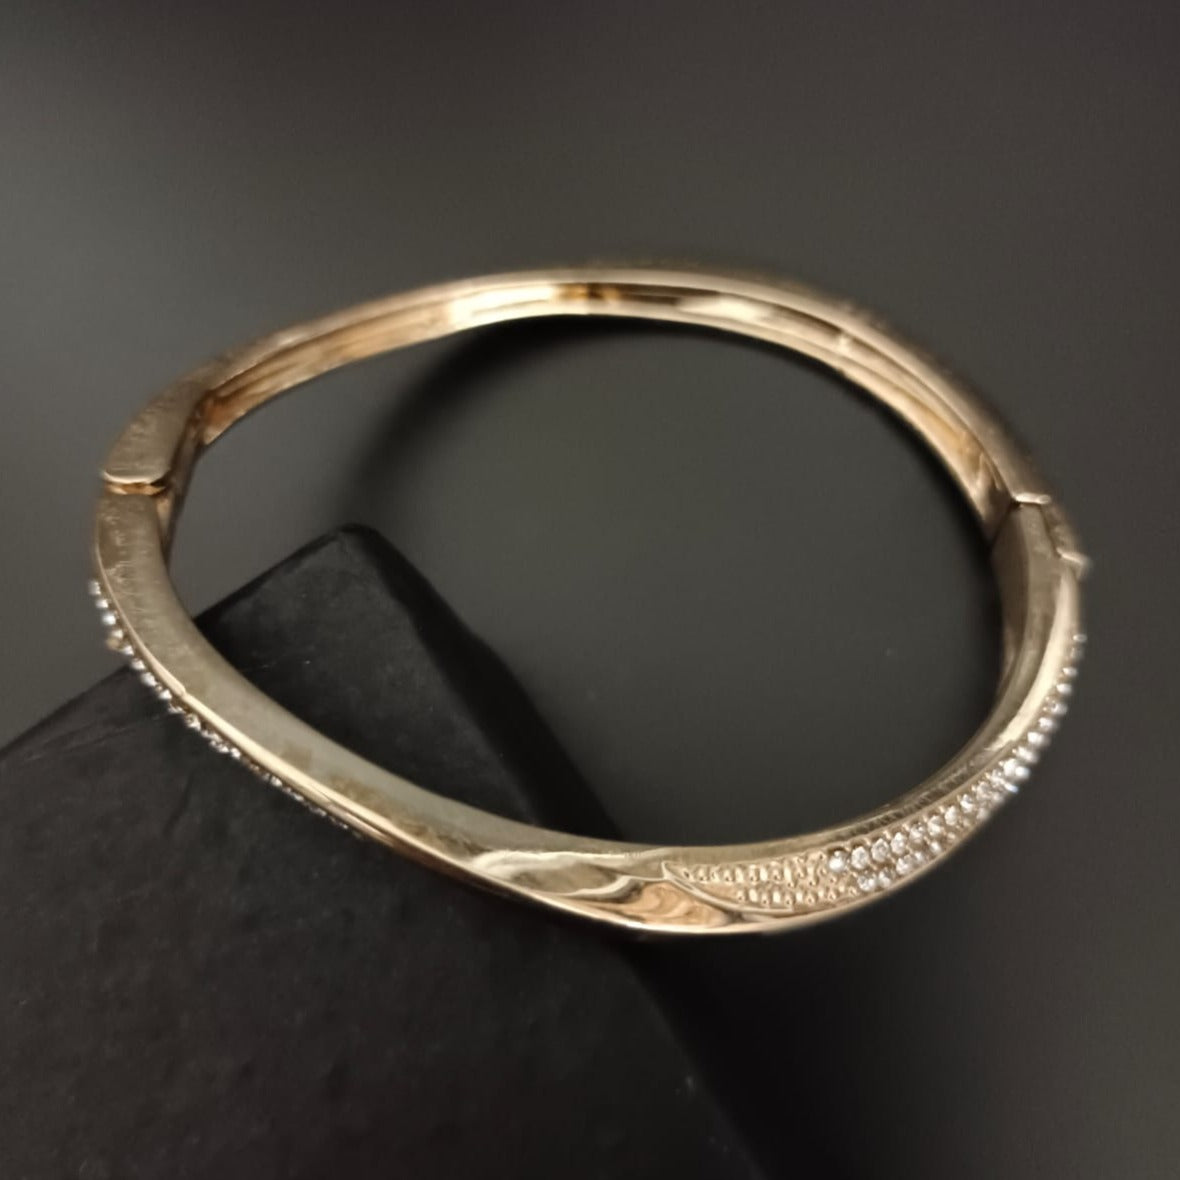 New Golden Diamond Kada Bracelet For Women and Girl-Jack Marc